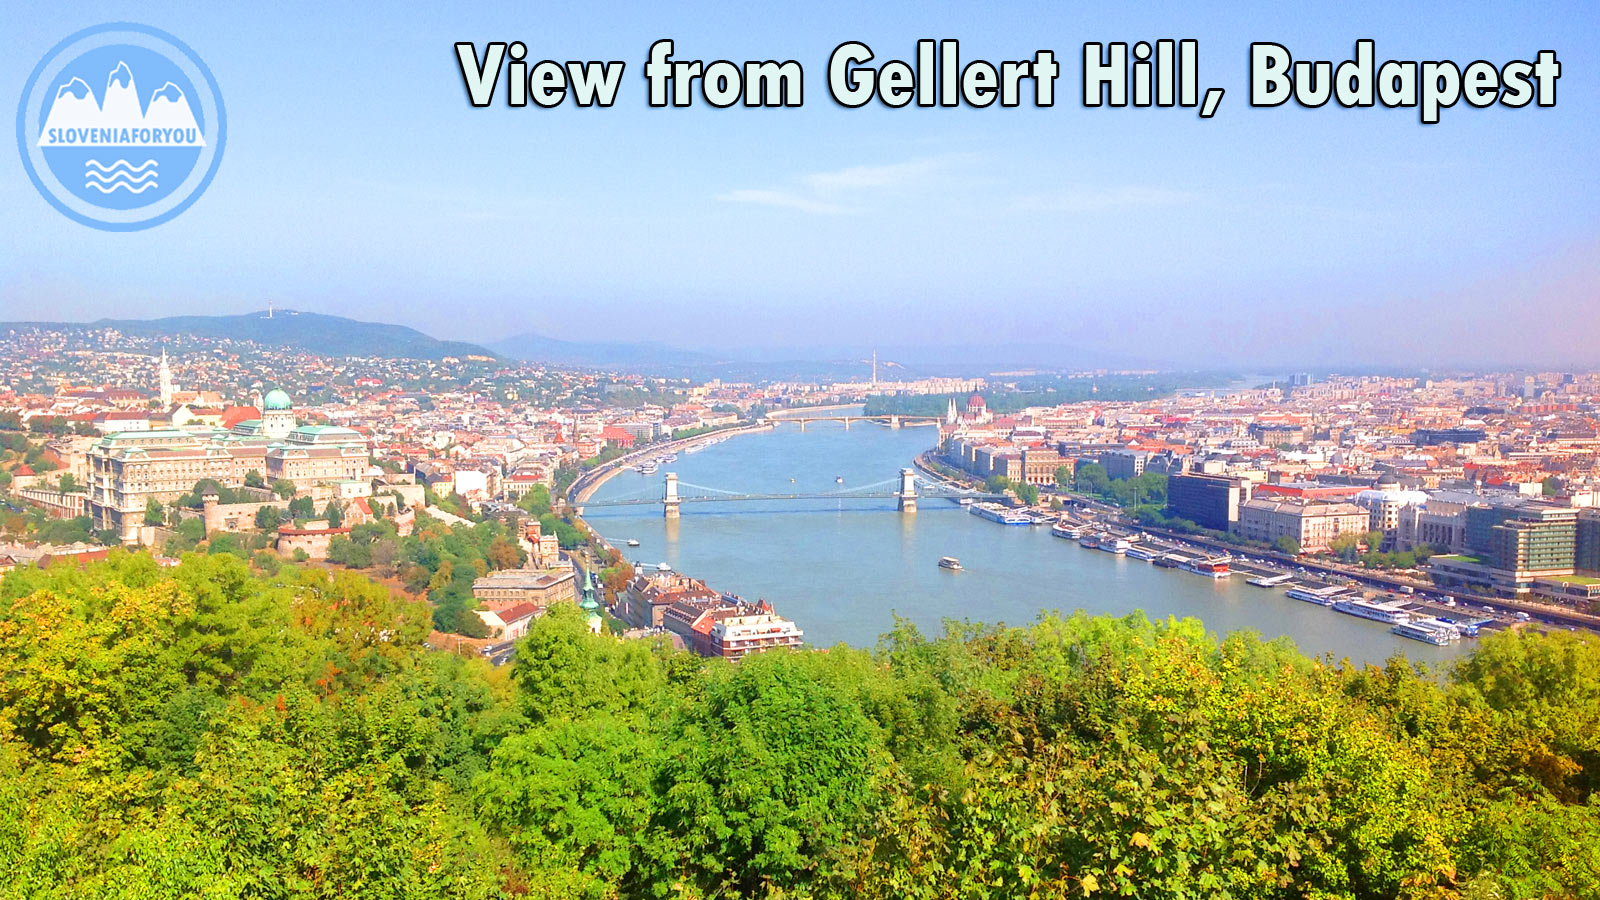 Views from Gellert Hill, Budapest, Sloveniaforyou